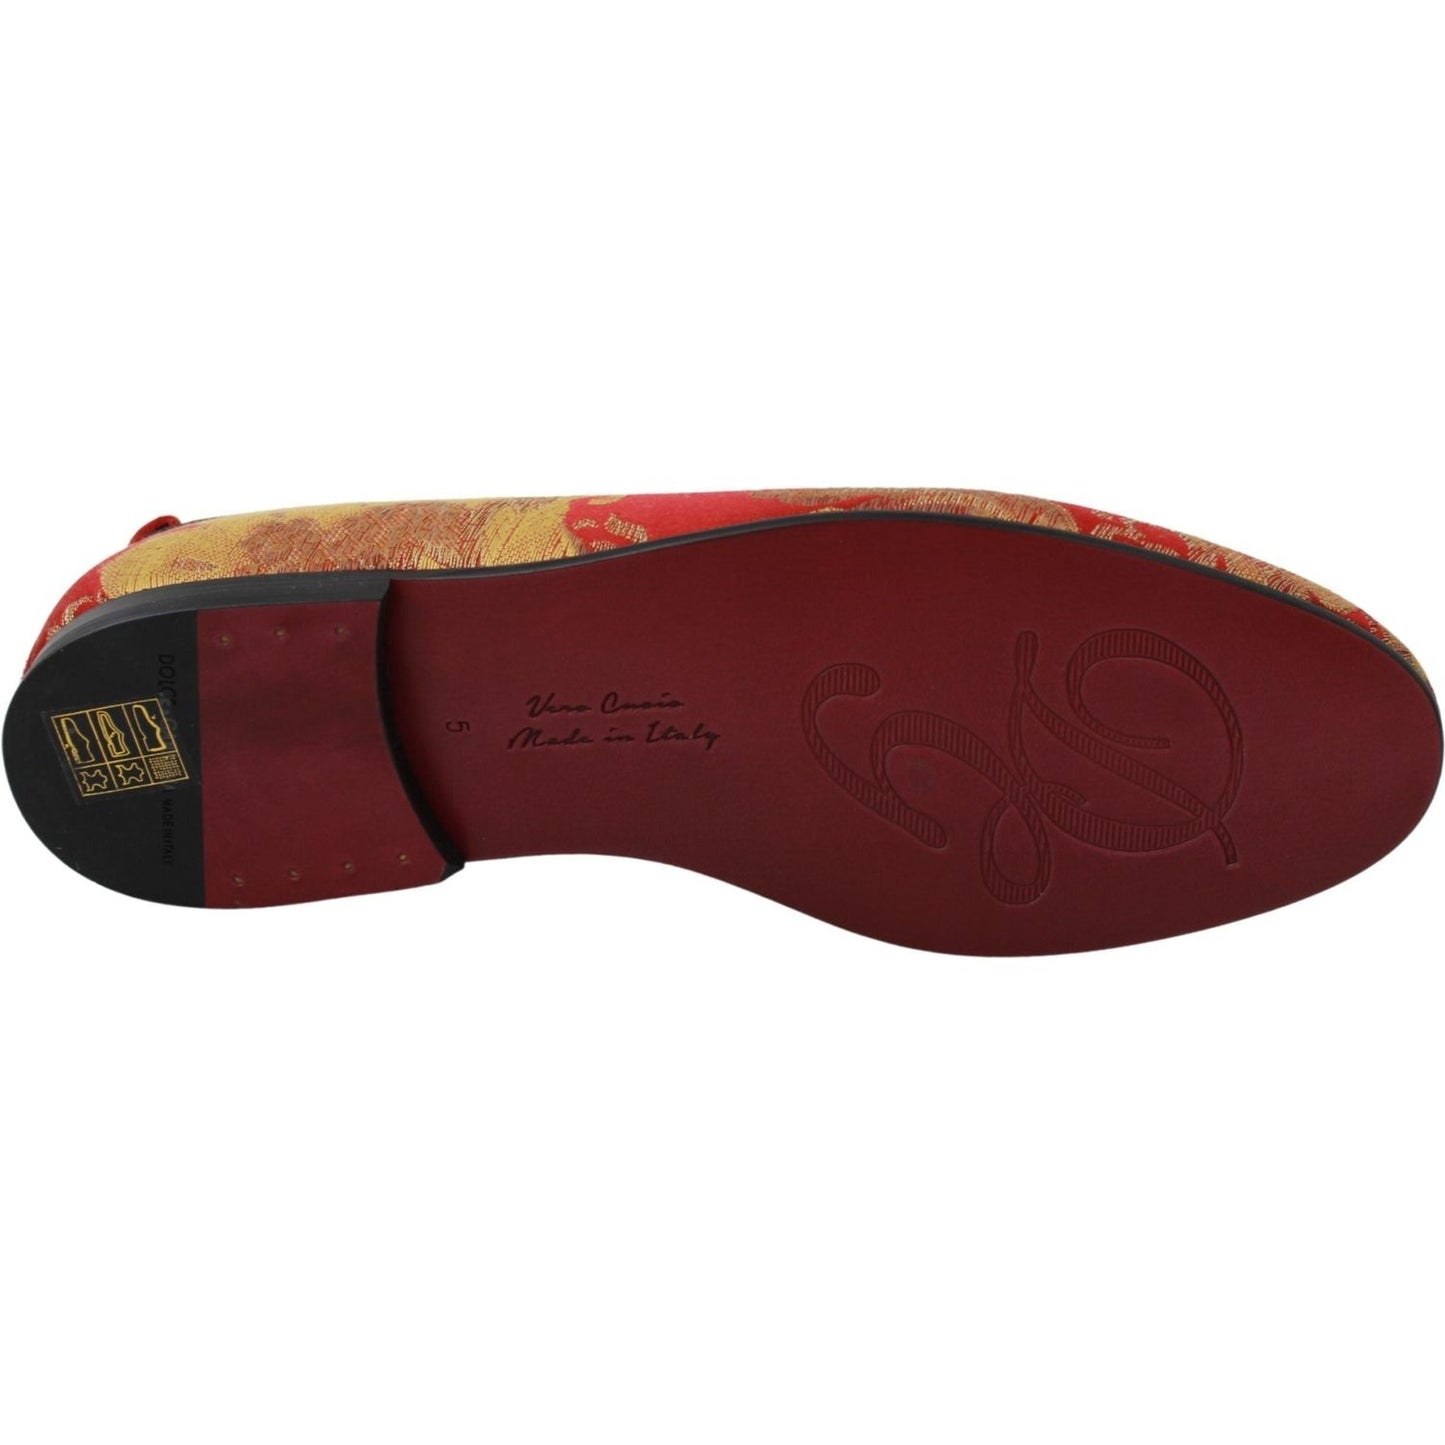 Dolce & Gabbana Rose Gold Brocade Loafers Slide Flats red-gold-brocade-slippers-loafers-shoes